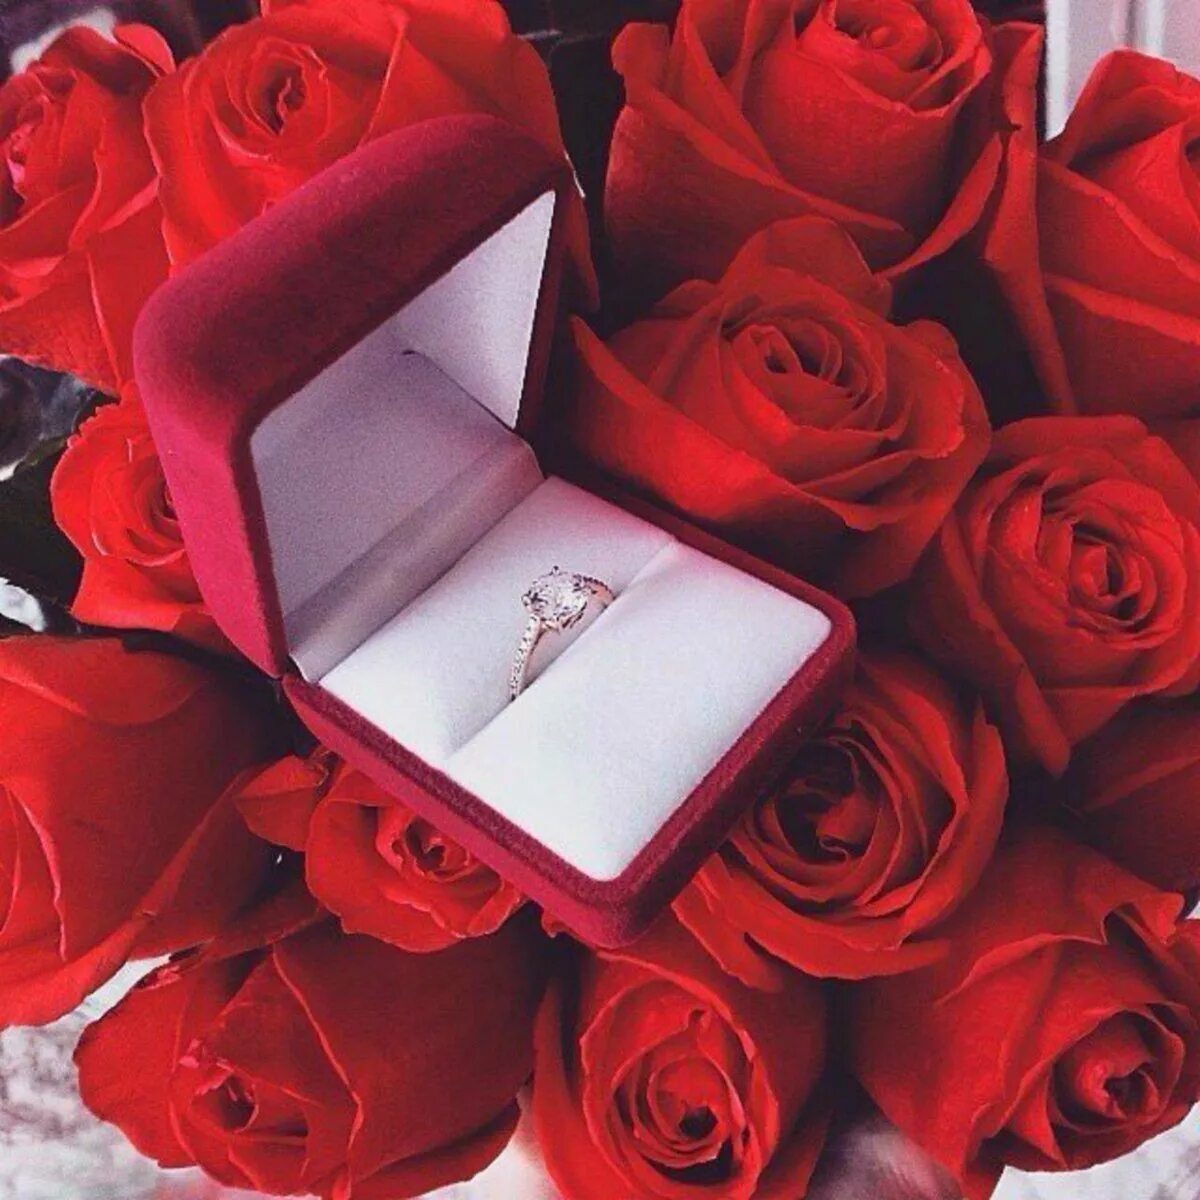 За рождение телефон. Цветы и кольцо в коробочке. Кольцо в коробочке с цветами. Розы и кольцо в коробочке. Цветы подарок для девушки.